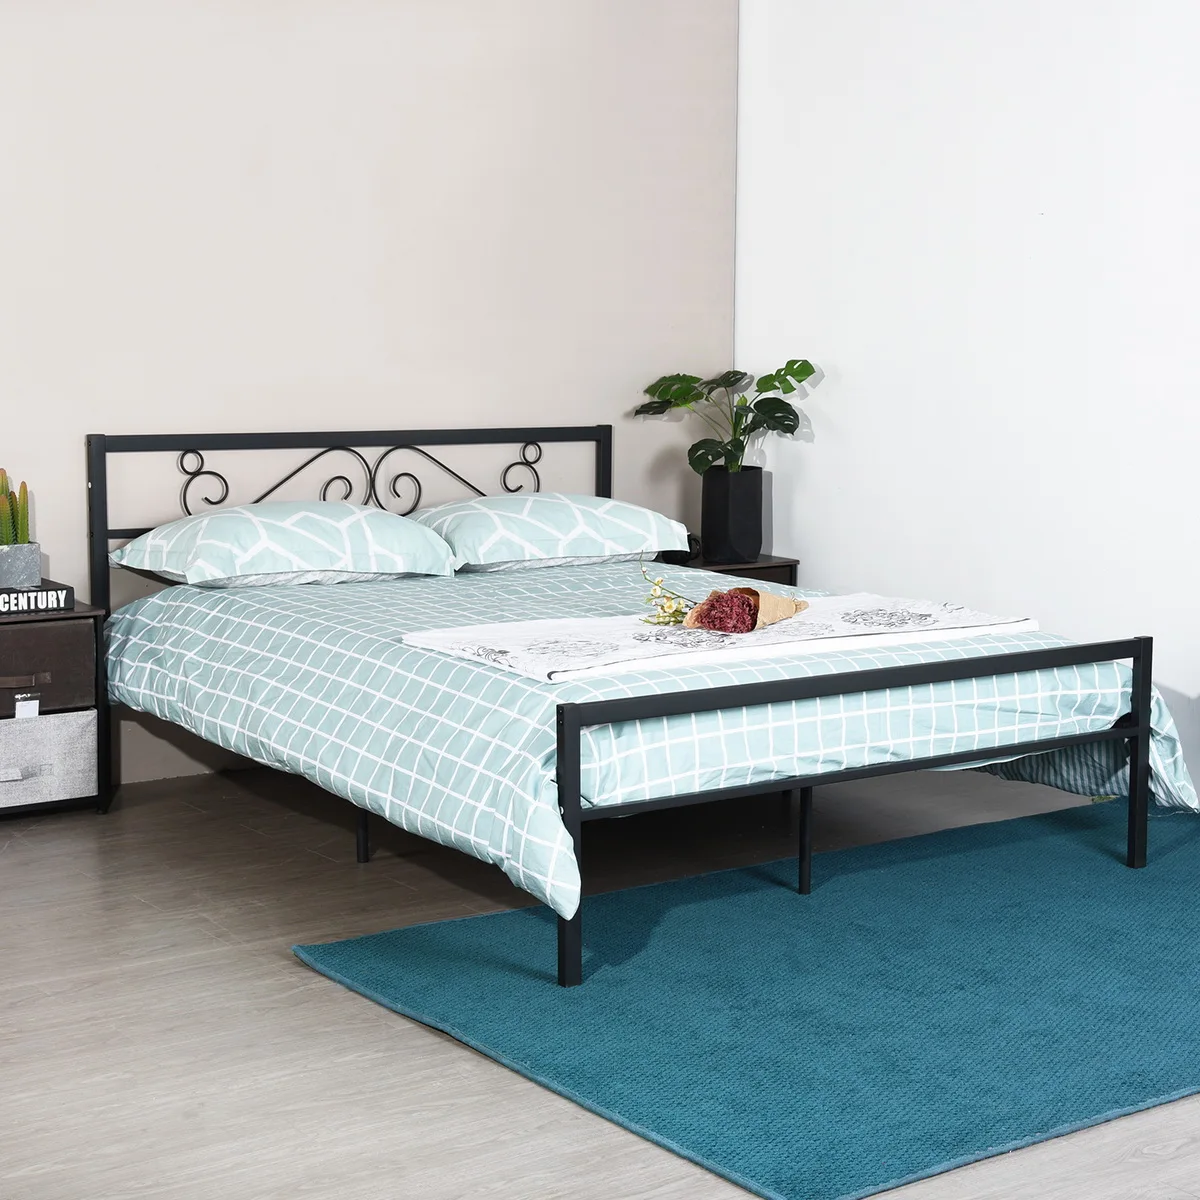 

Двуспальная кровать bkblack, двойная кровать, рама кровати, мебель для спальни, склад в США